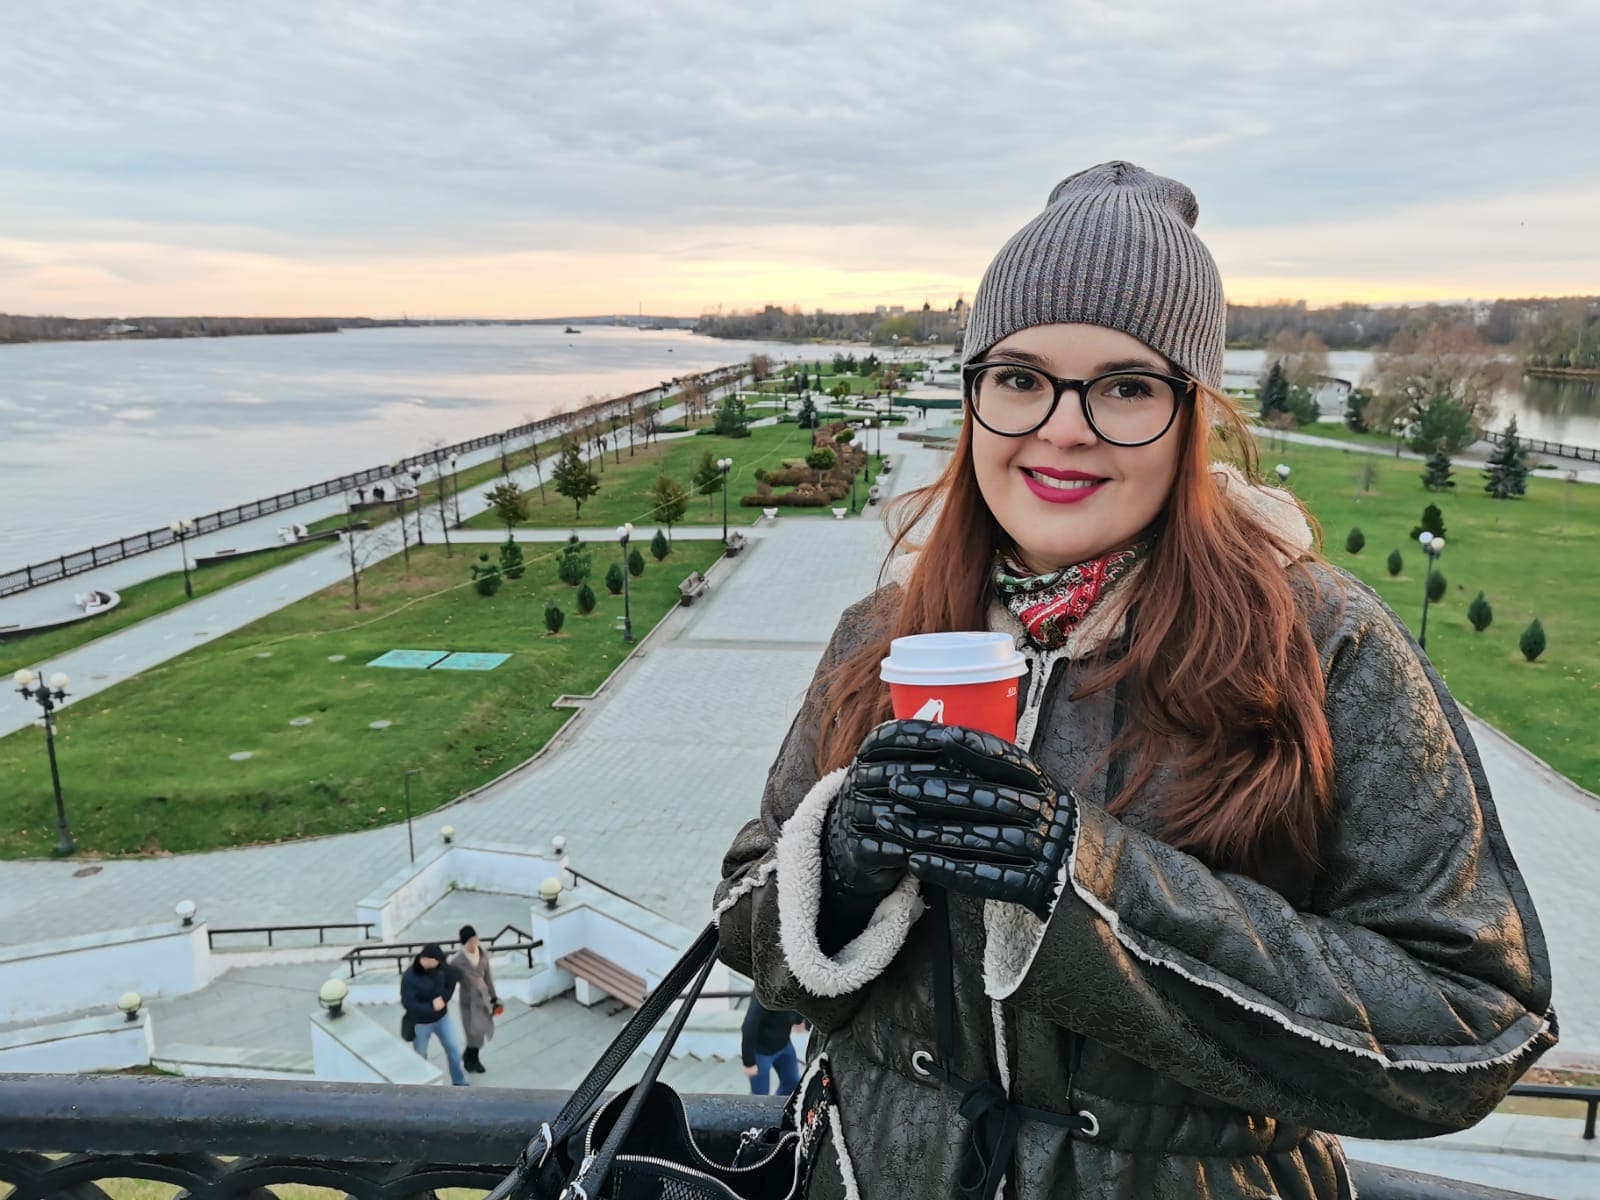 Юлия Самсонова, 36 лет, Ярославль, инсульт, контент-специалист Everland